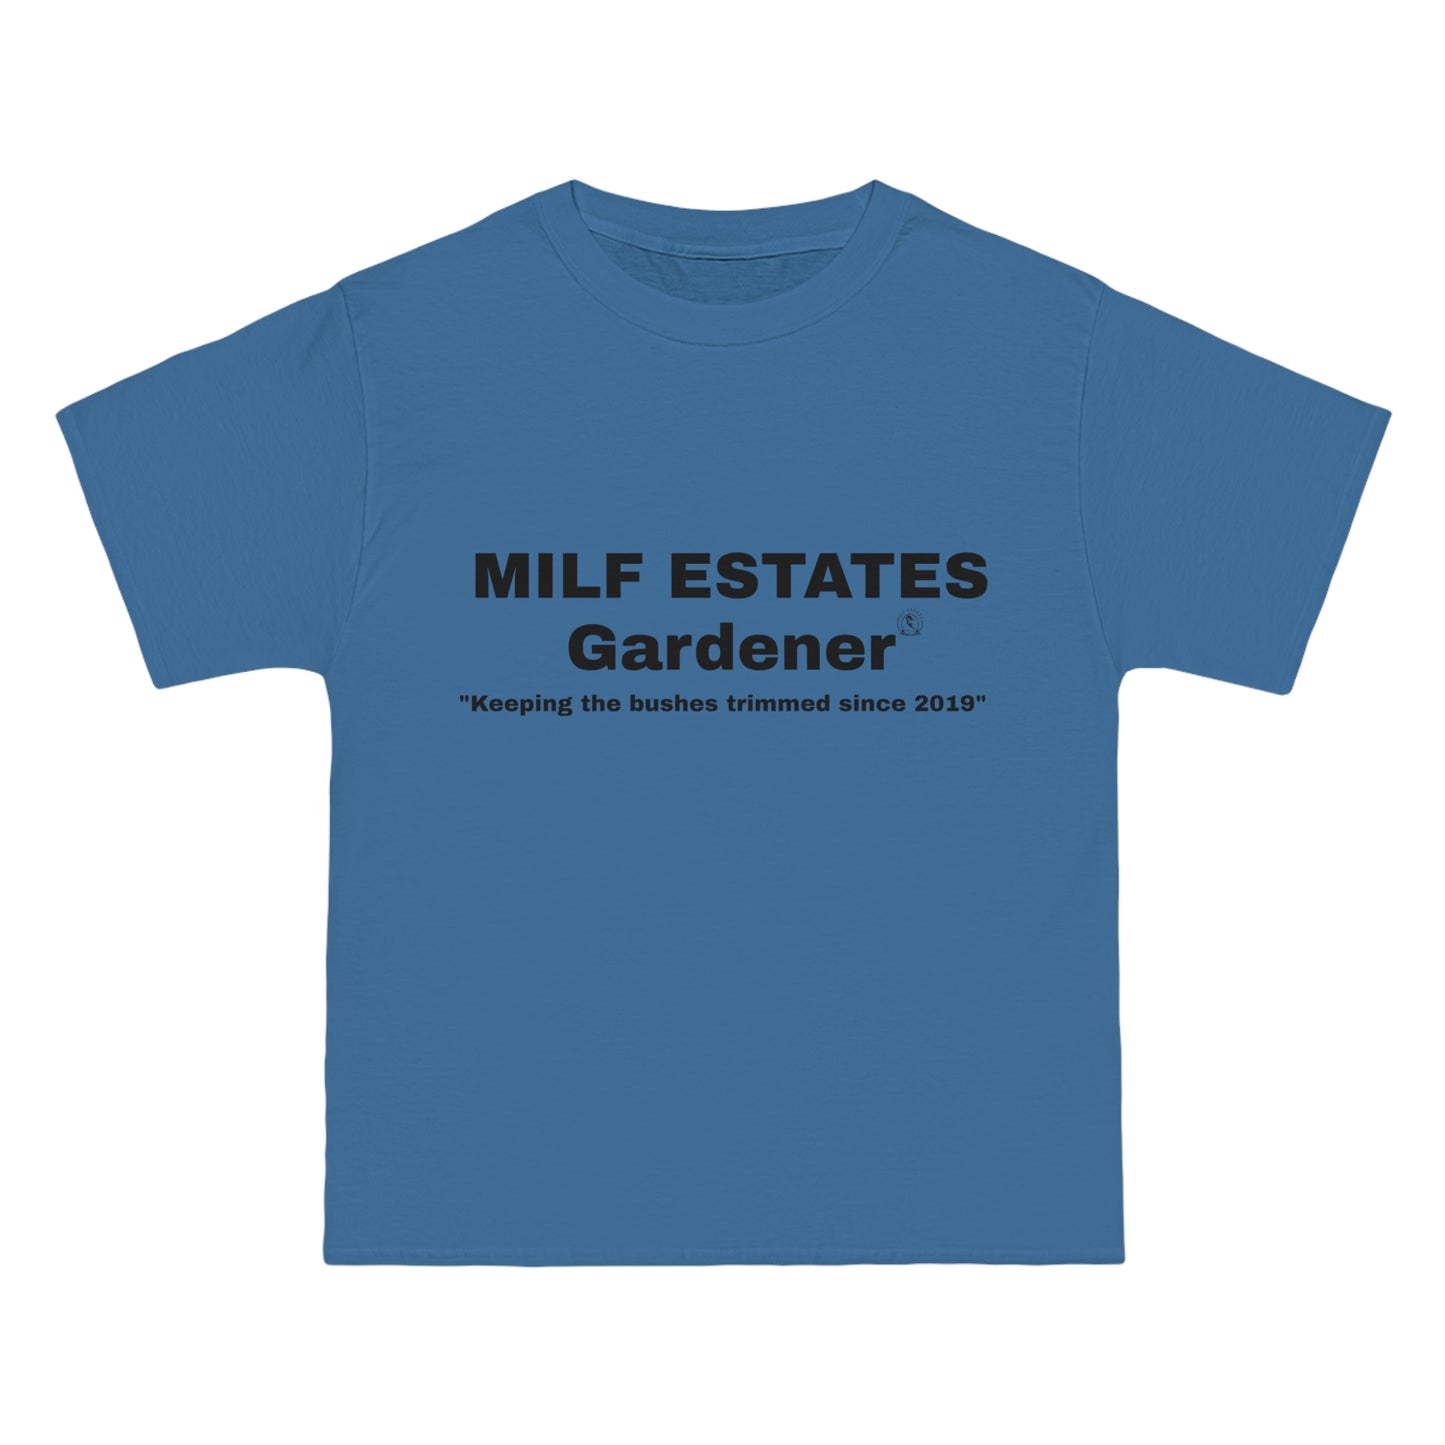 MILF ESTATES Gardener "Keeping the bushes trimmed since 2019"